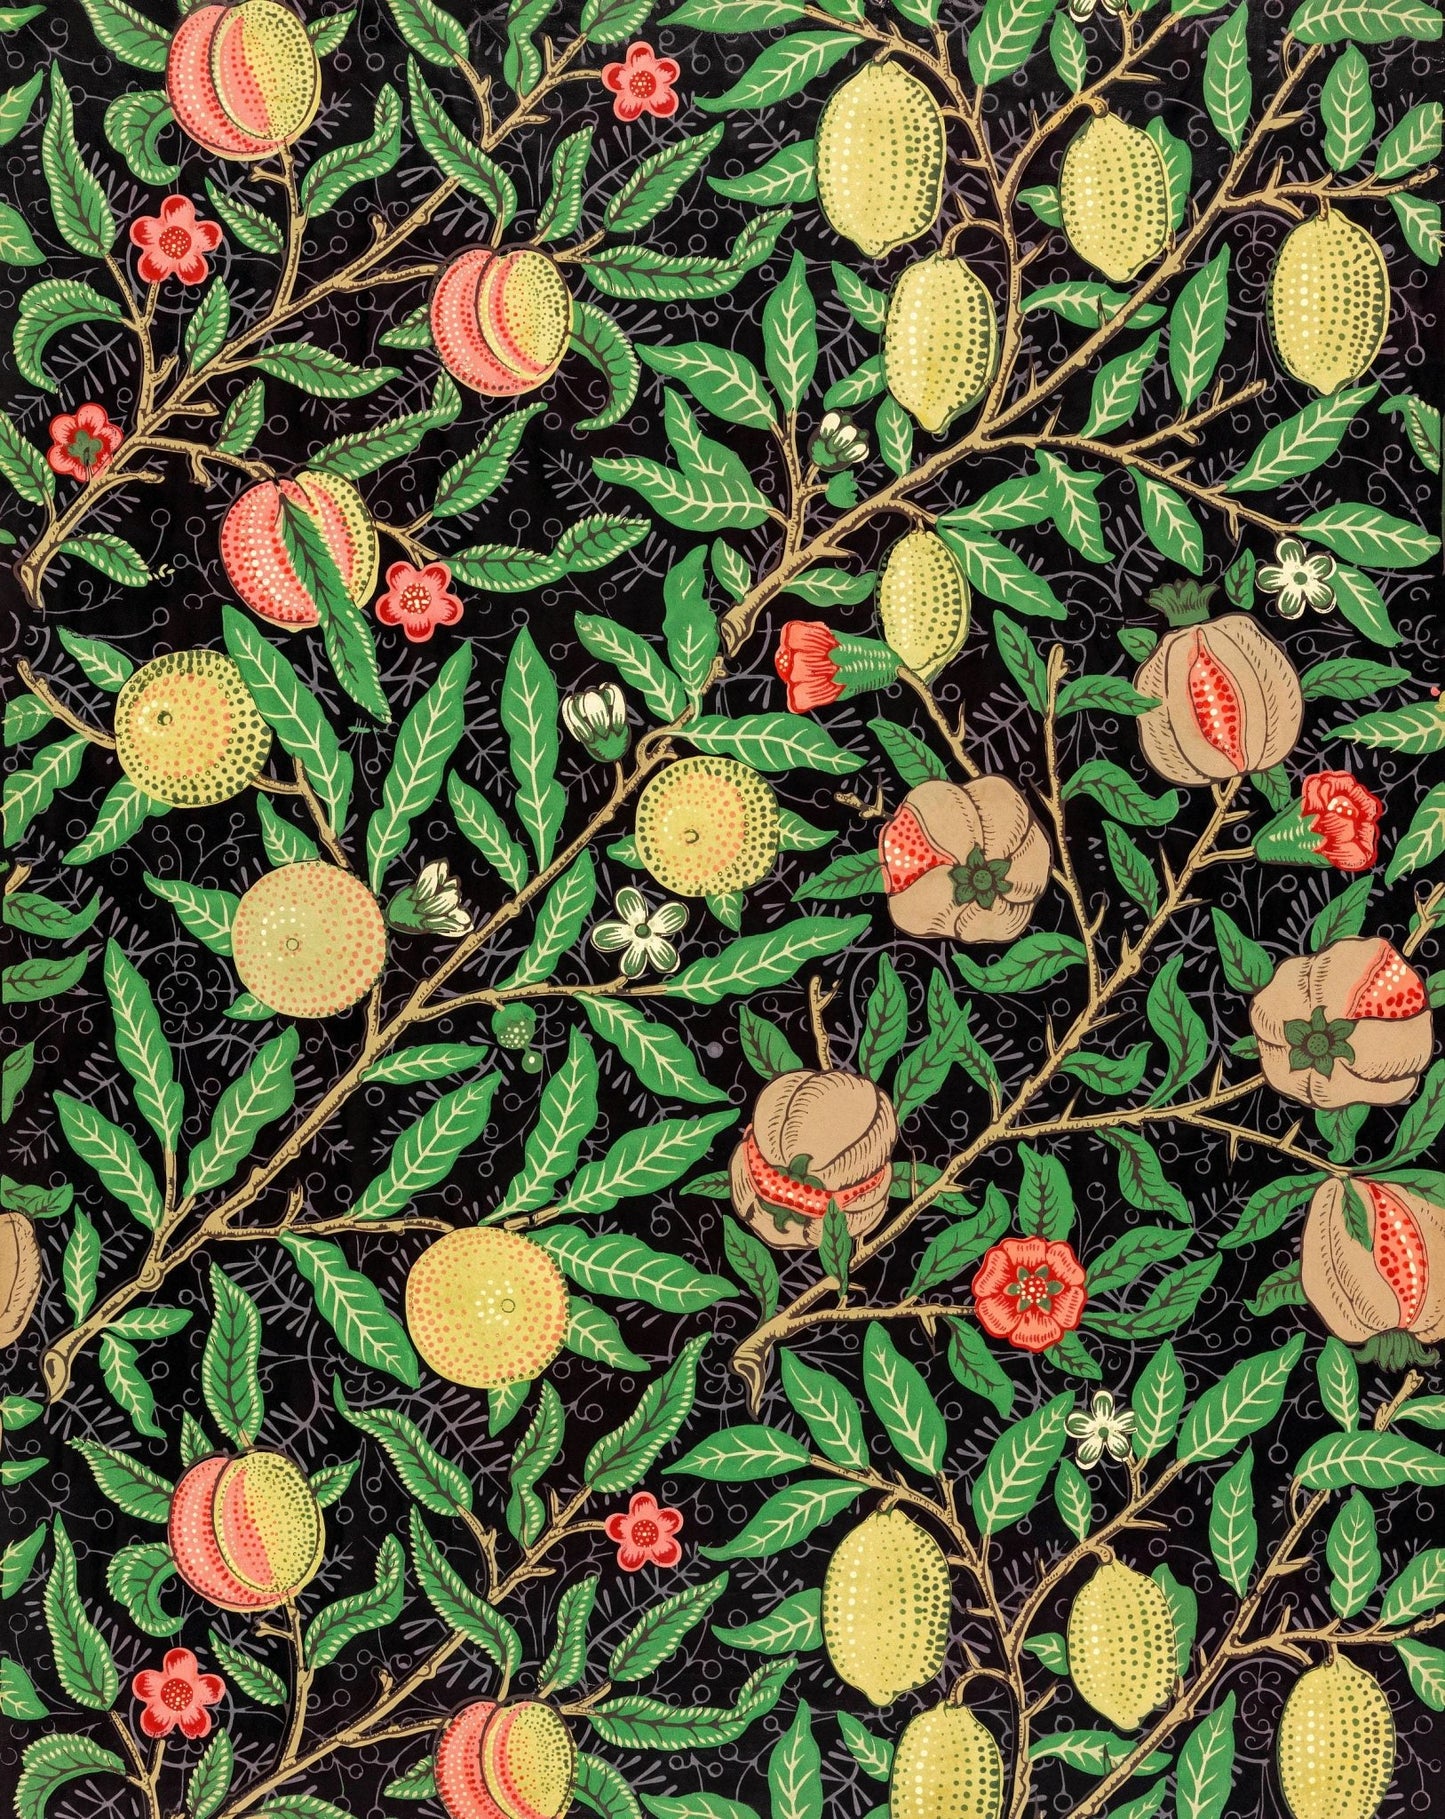 WILLIAM MORRIS - Pomegranate Fruit